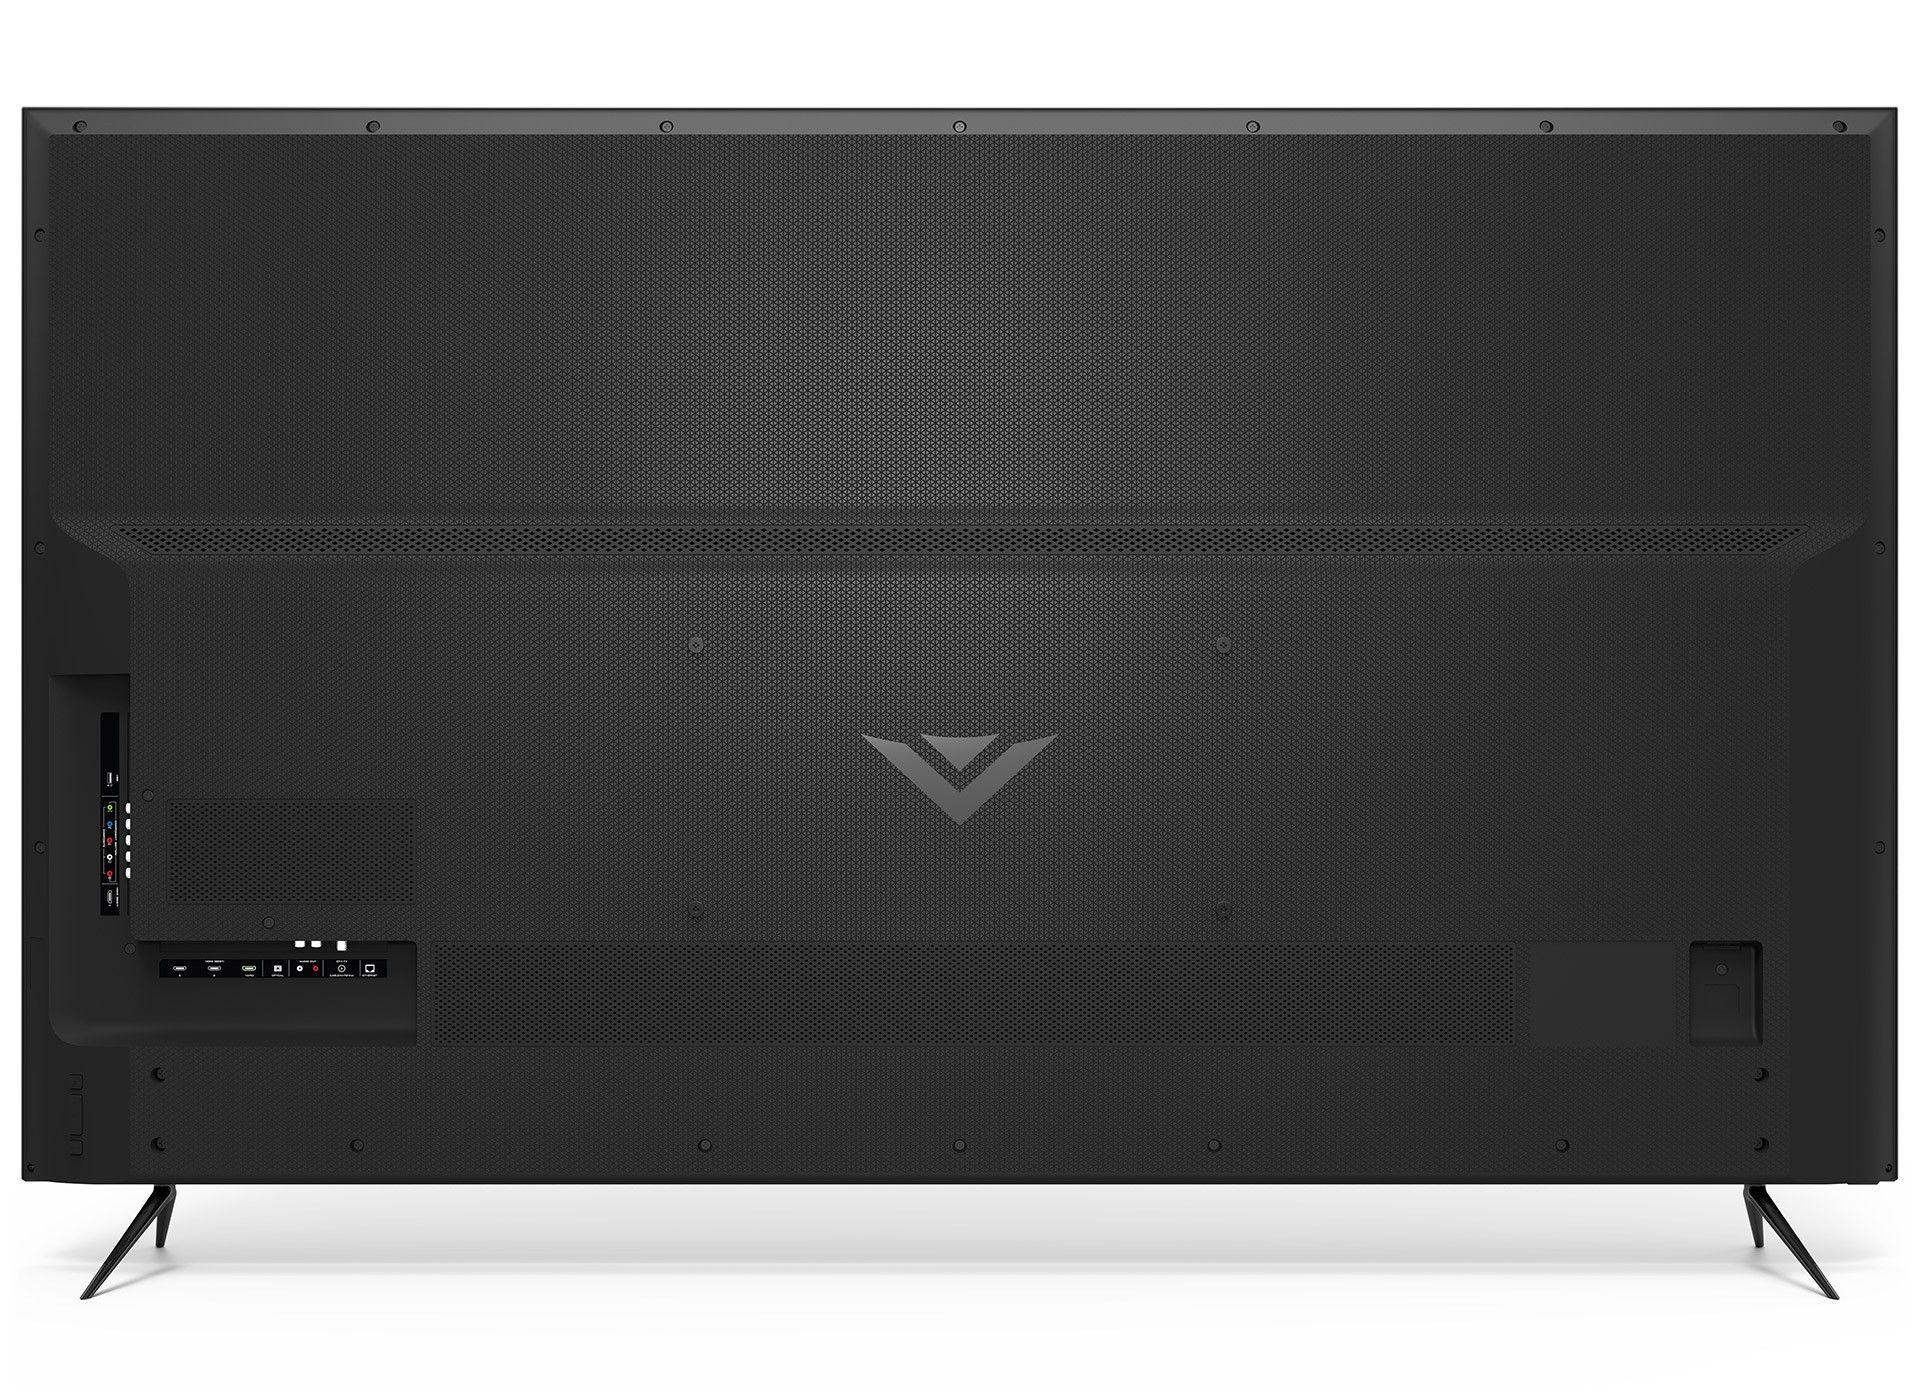 Vizio Computer Logo - VIZIO M Series™ 70 Class 4K HDR Smart TV. M70 F3